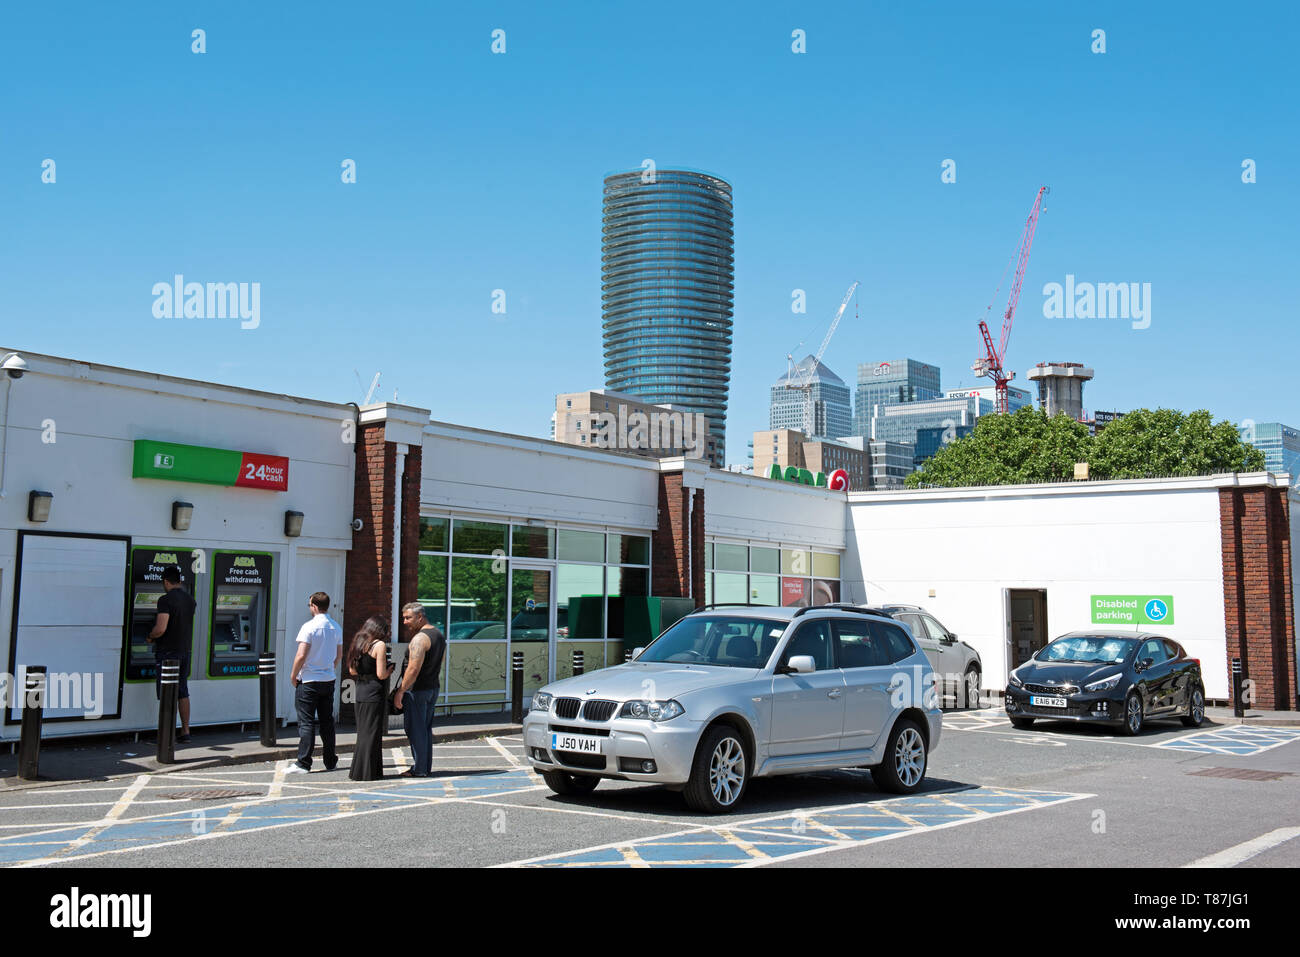 ASDA prelievi dagli ATM macchina con persone di accodamento, parcheggio auto Crossharbor, Isle of Dogs, London Borough of Tower Hamlets. Foto Stock